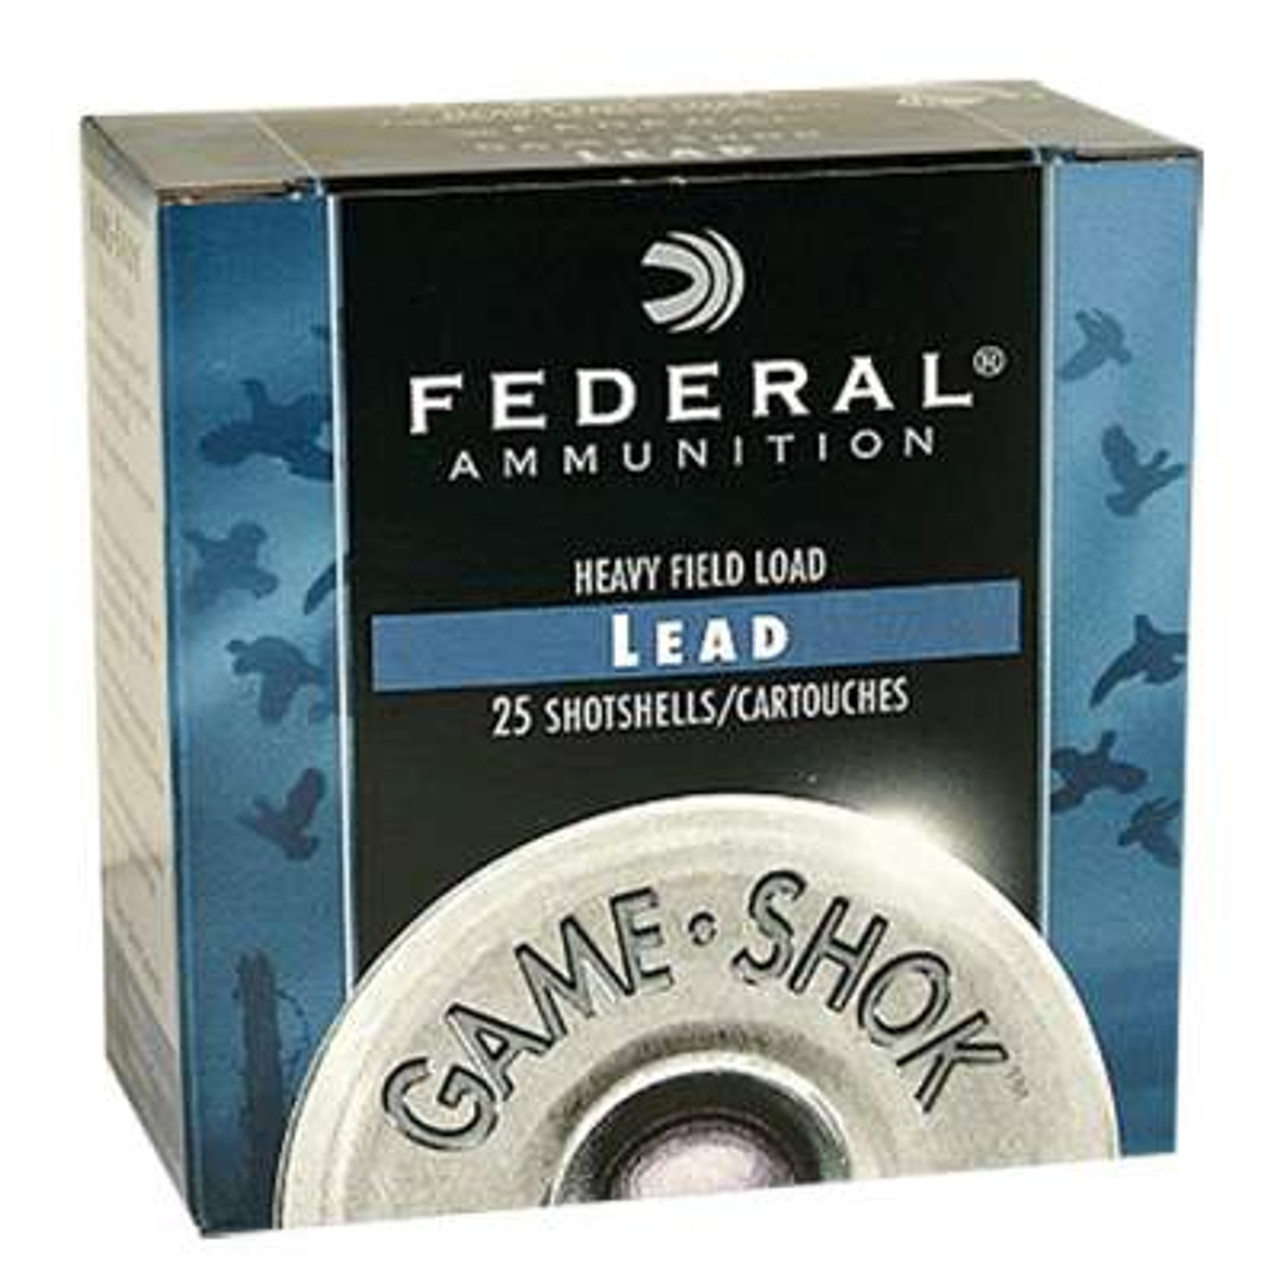 Federal Game Load Upland Hi-Brass 28 Gauge, 2-3/4, 1 oz, #7.5